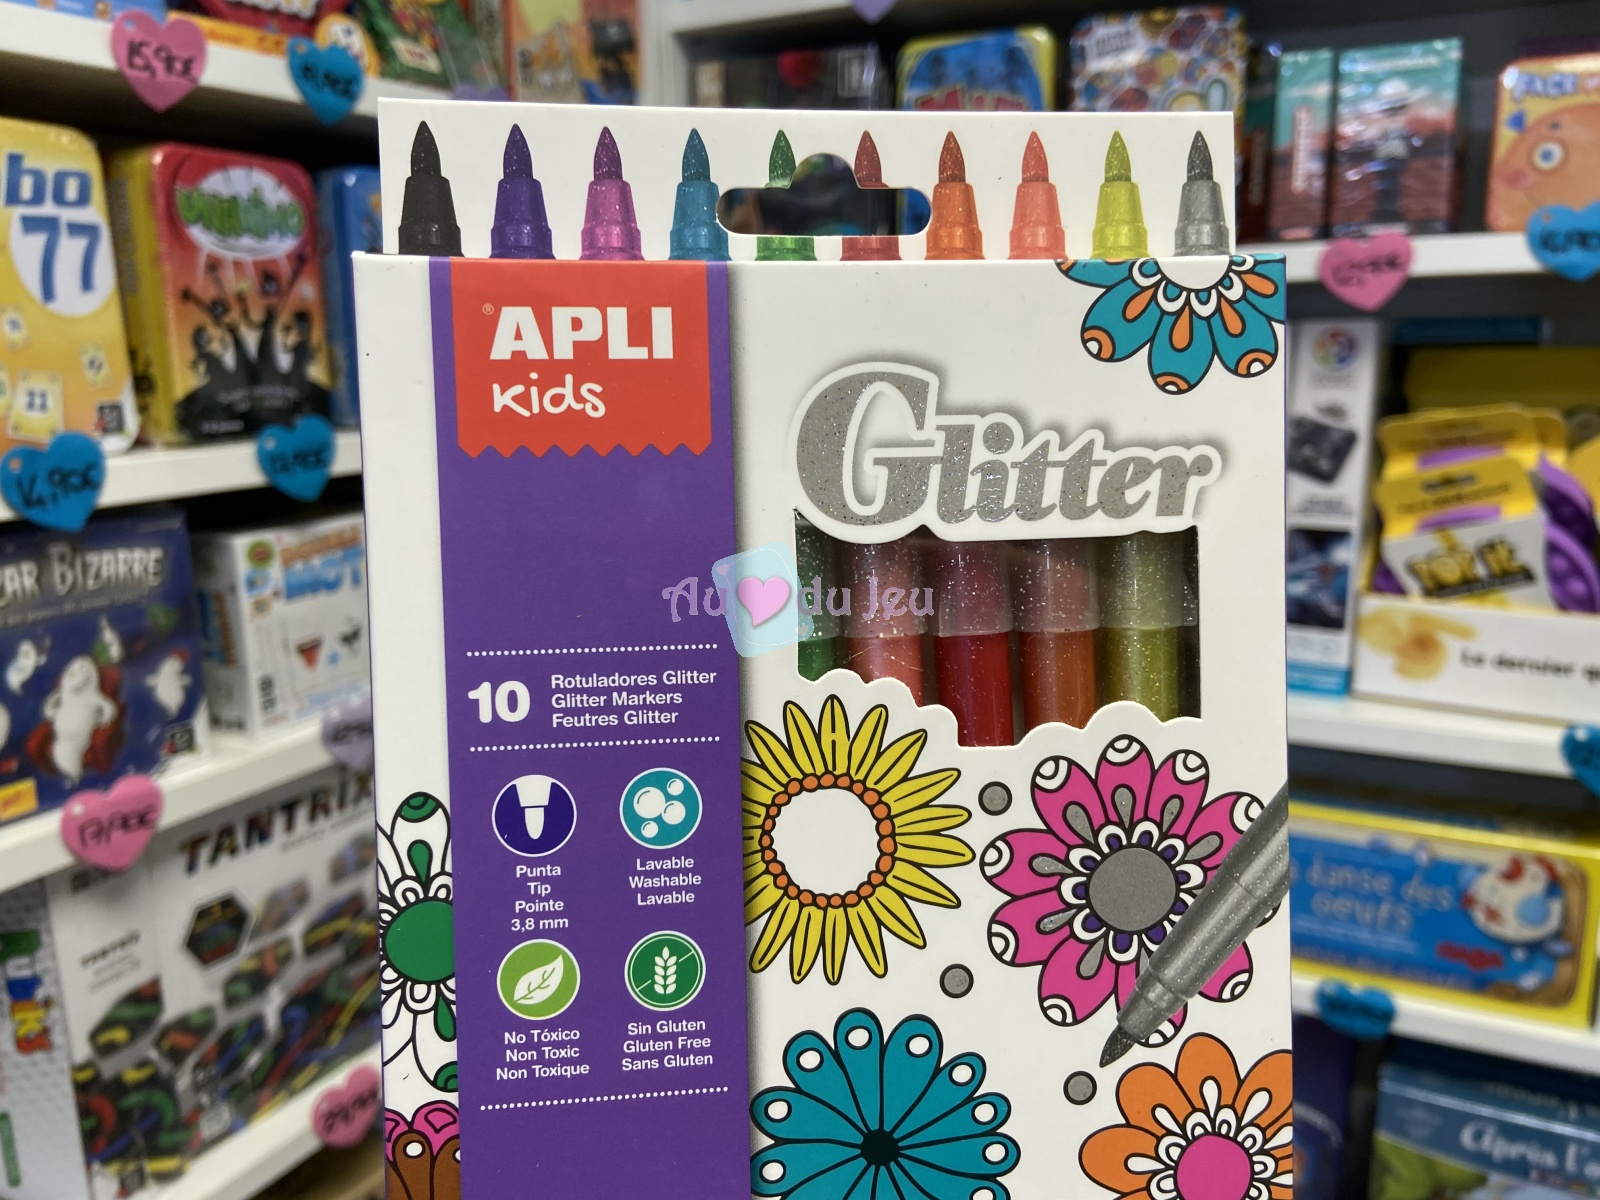 10 Marqueurs Glitter APLI Kids